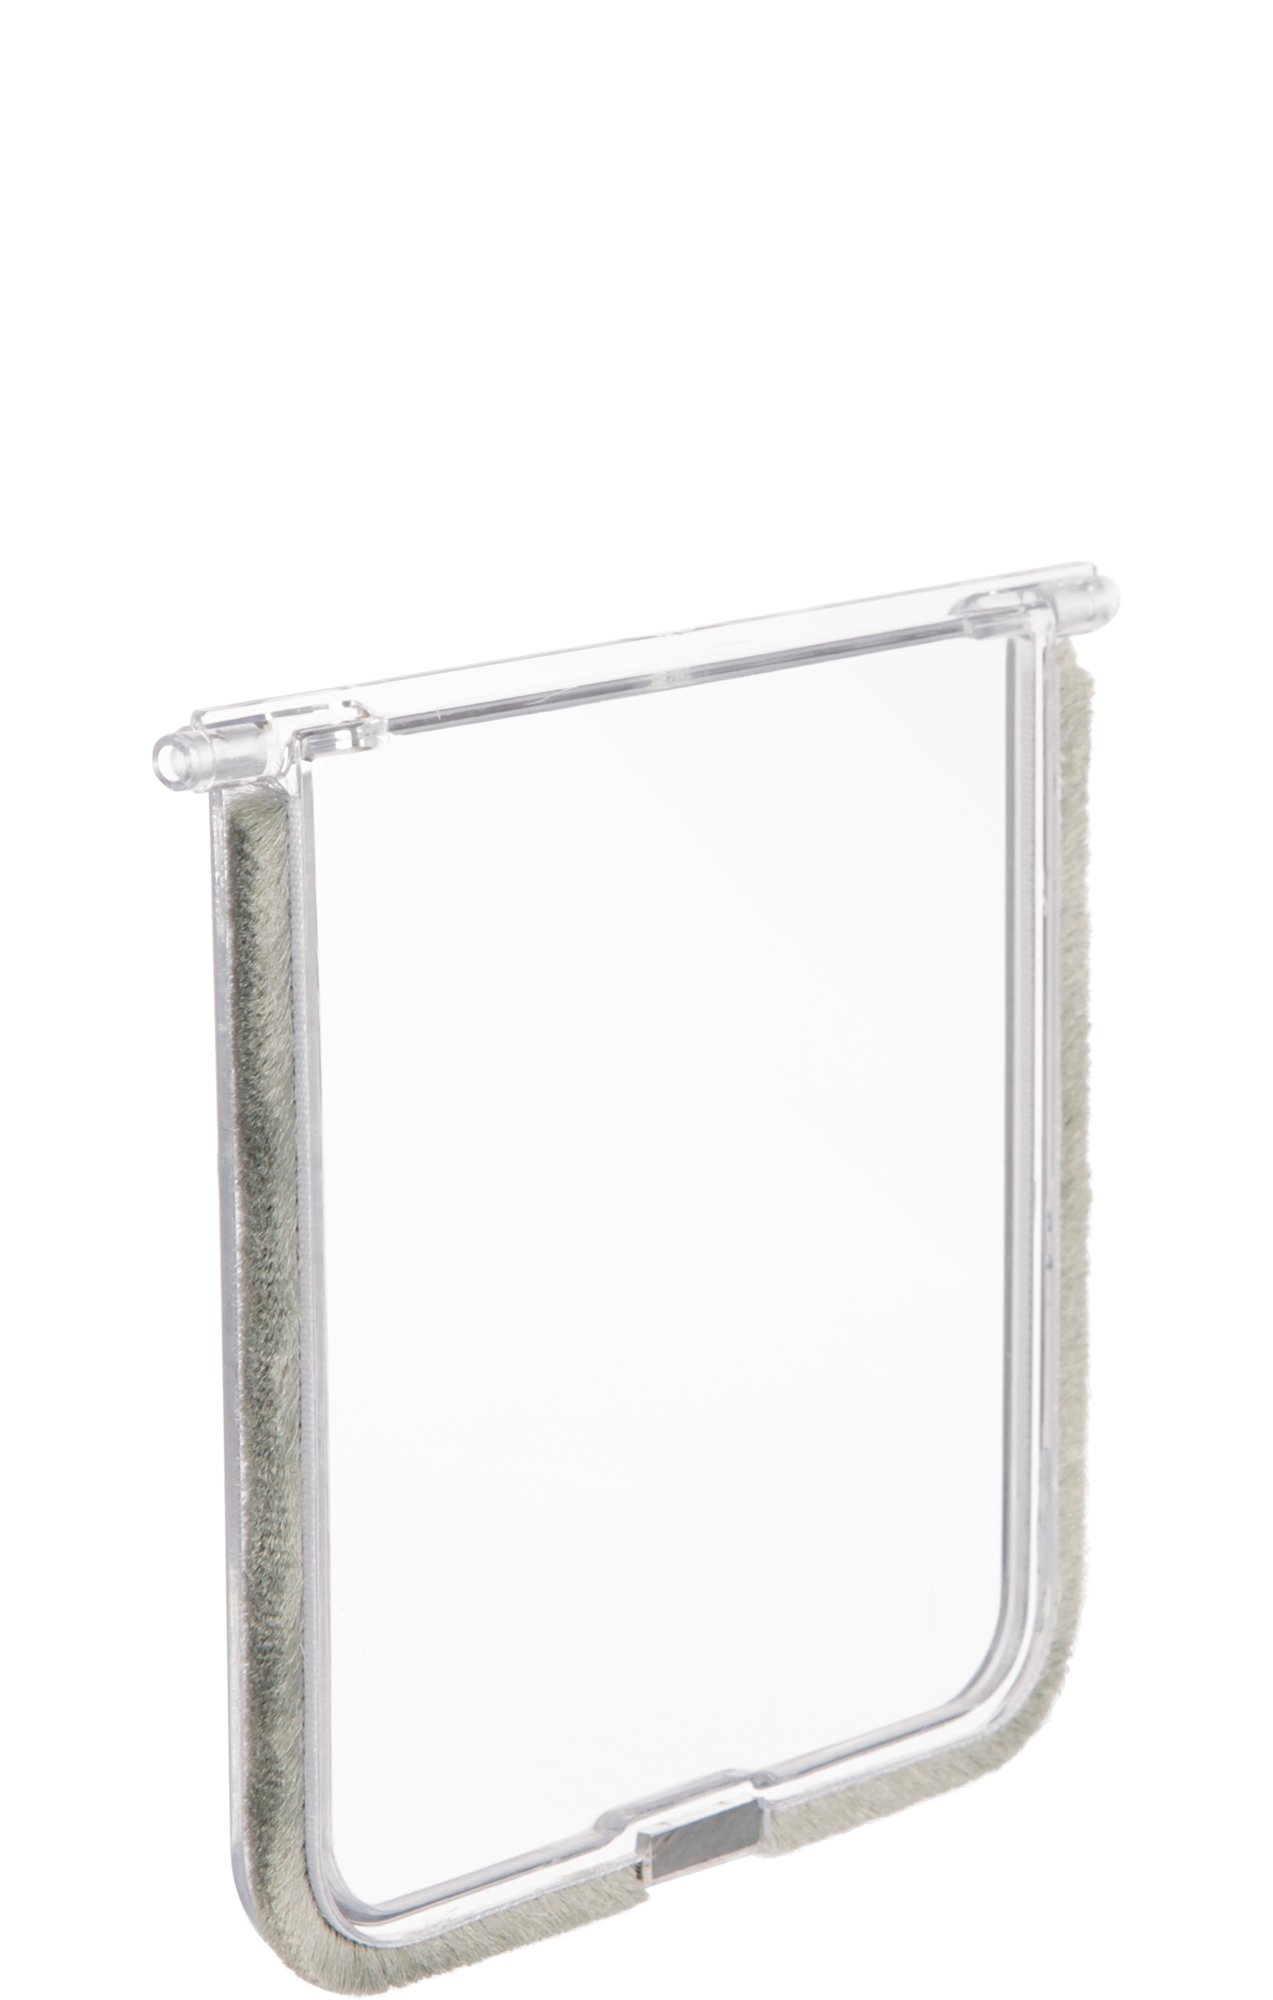 TRIXIE Ersatzklappe für diverse TRIXIE Ersatzklappe Freilauftür #3869, 14,7 × 15,8 cm, weiß